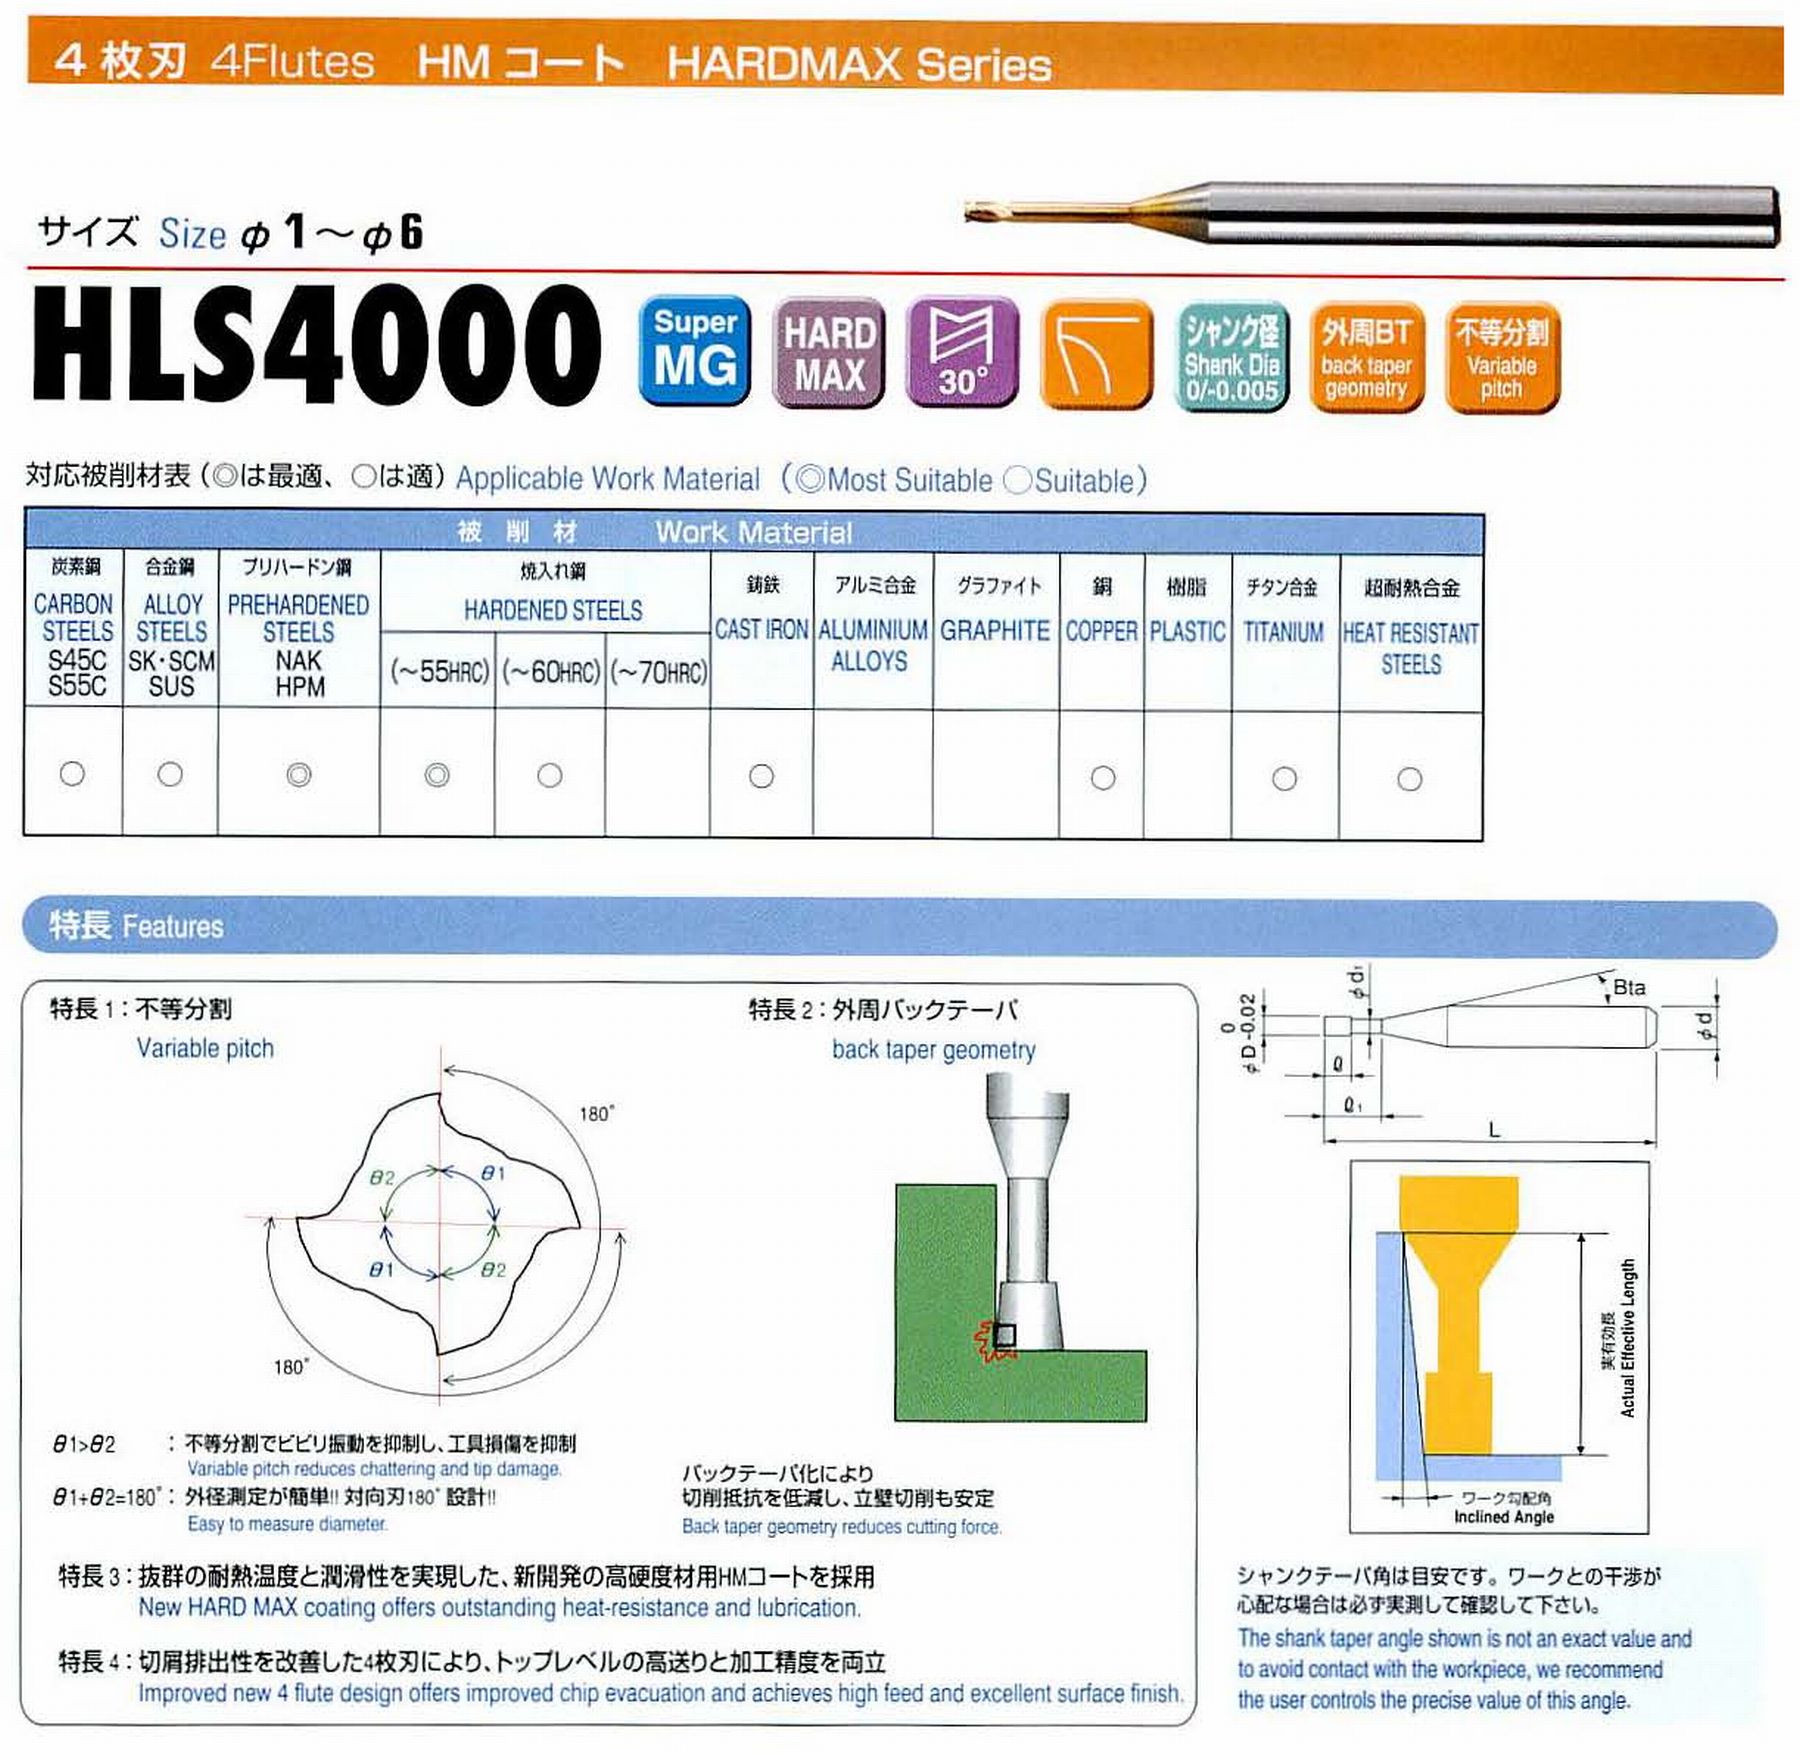 ユニオンツール 4枚刃 HLS4010-040 外径1 有効長4 刃長1 首径0.95 シャンクテーパ角16° 全長50 シャンク径4